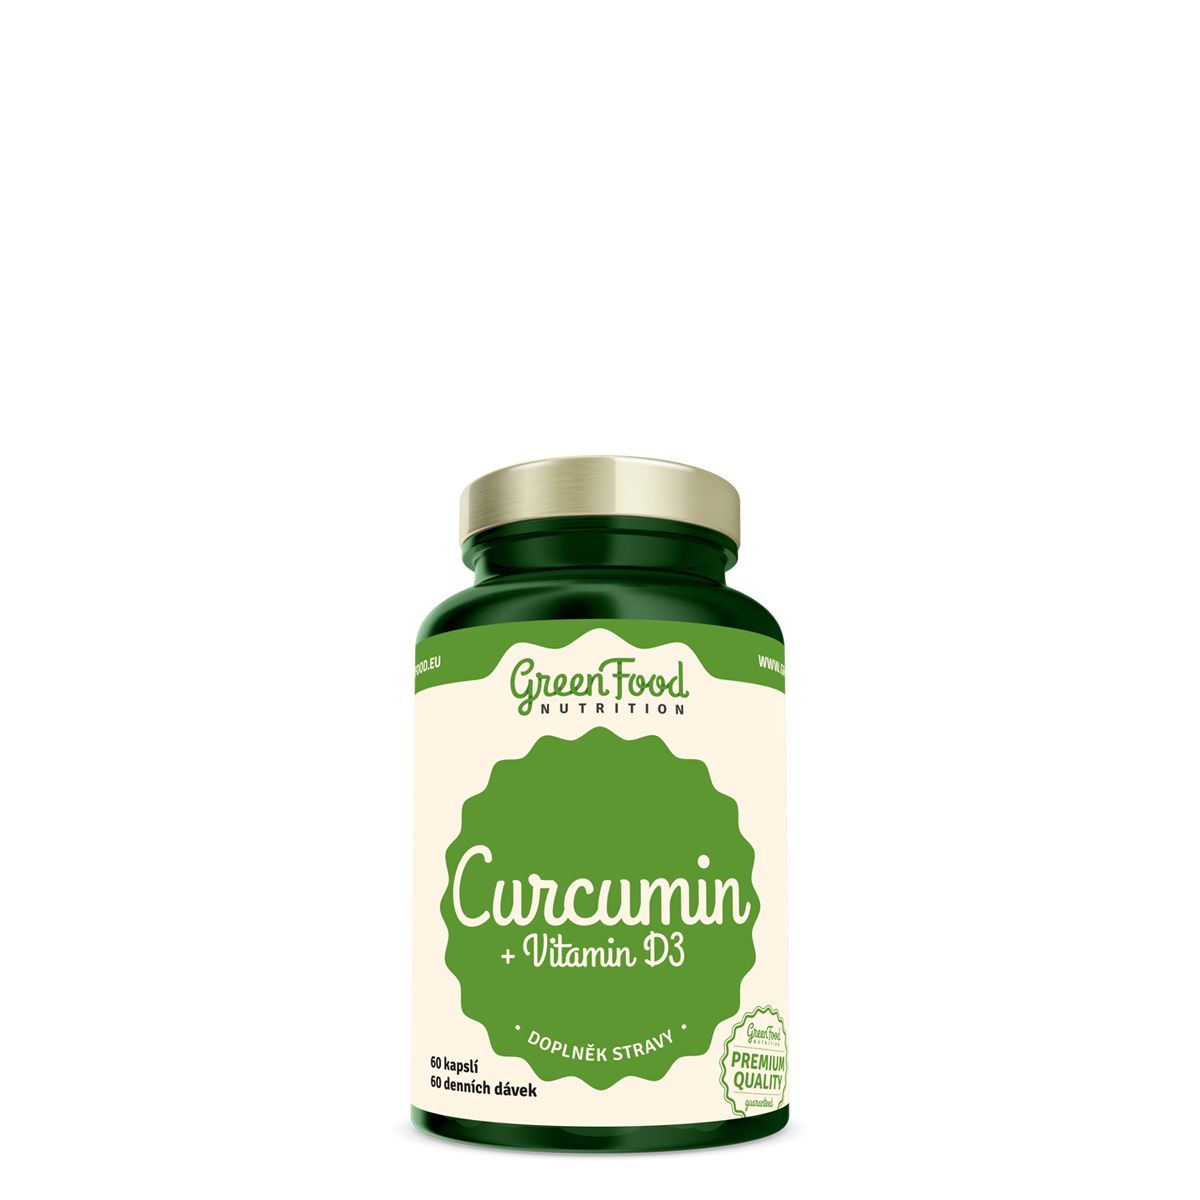 Kurkuma + D3 vitamin, GreenFood Nutrition Curcumin + Vitamin D3, 60 kapszula